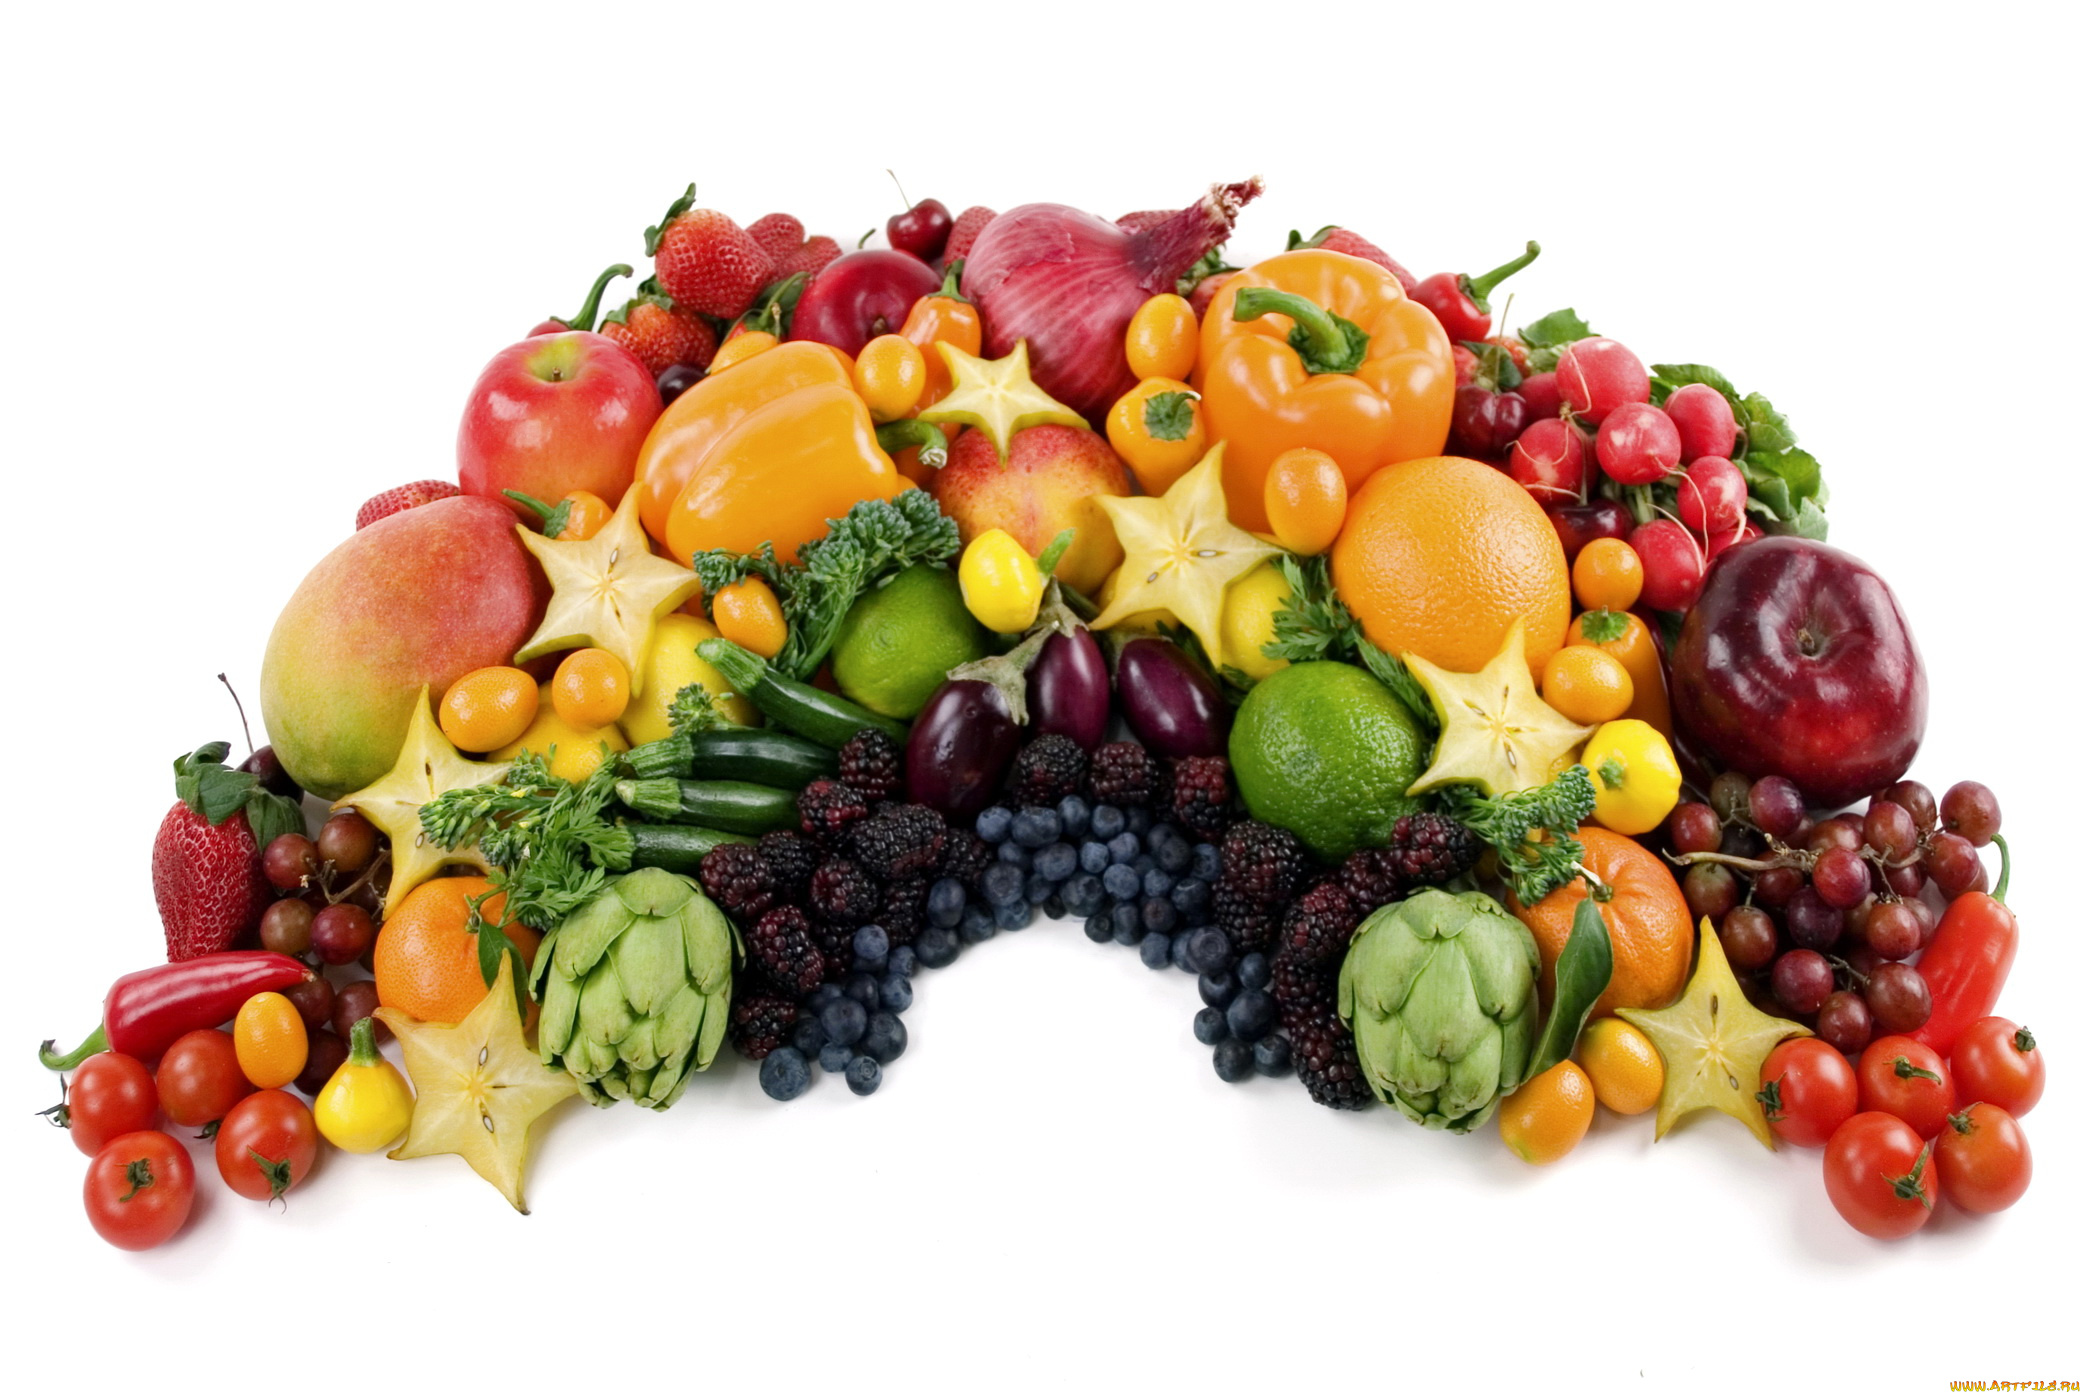 еда, фрукты, овощи, вместе, перец, помидоры, баклажаны, виноград, яблоки, груши, томаты